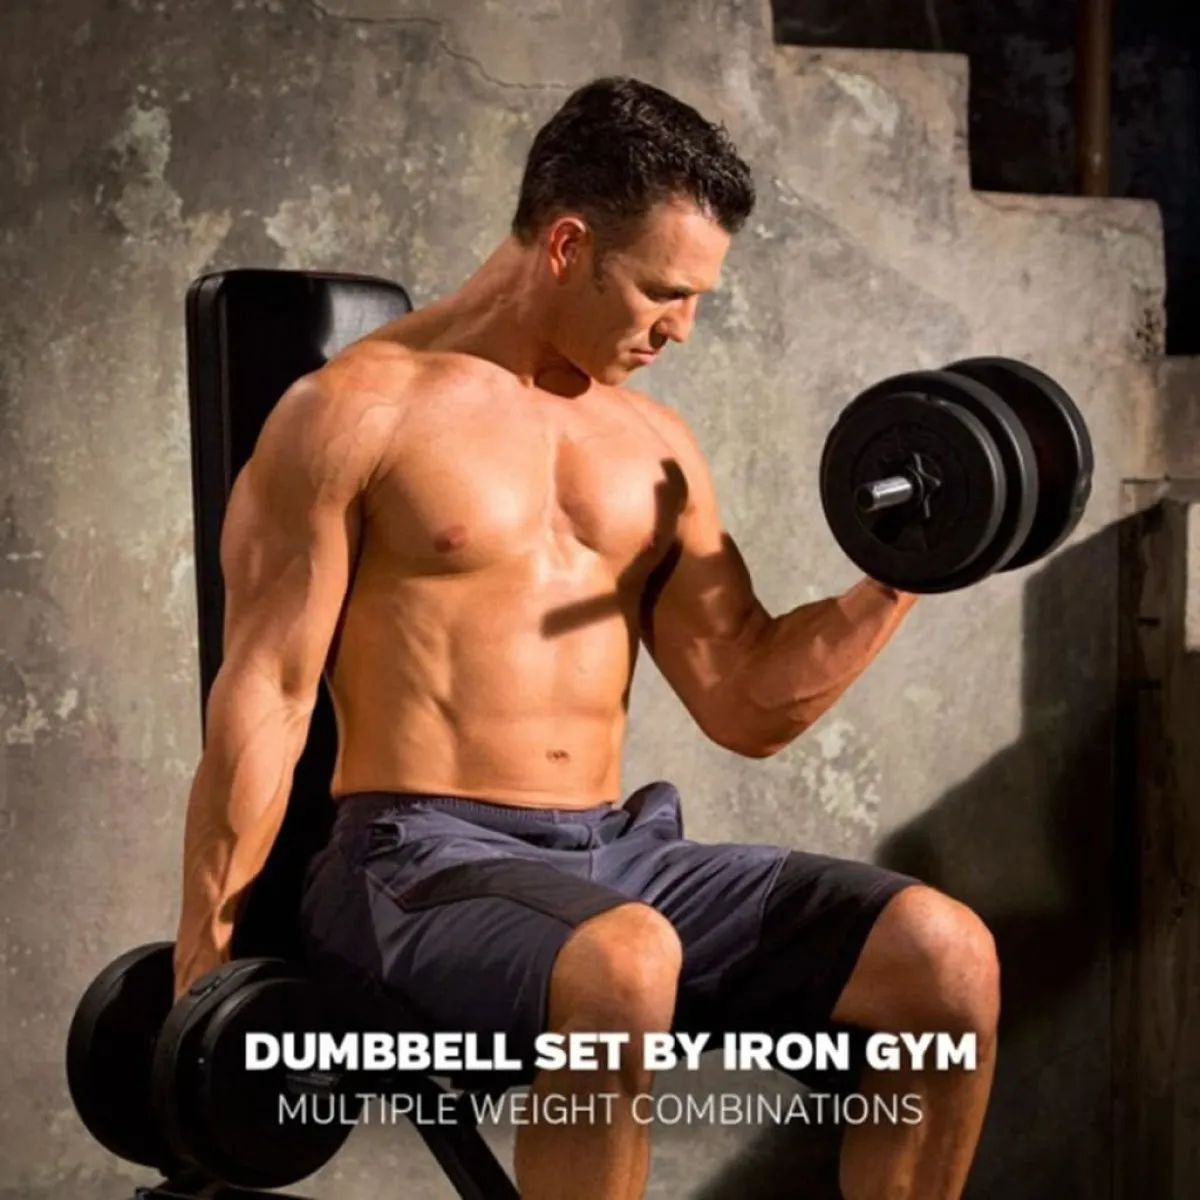 Iron Gym Dumbbell Set